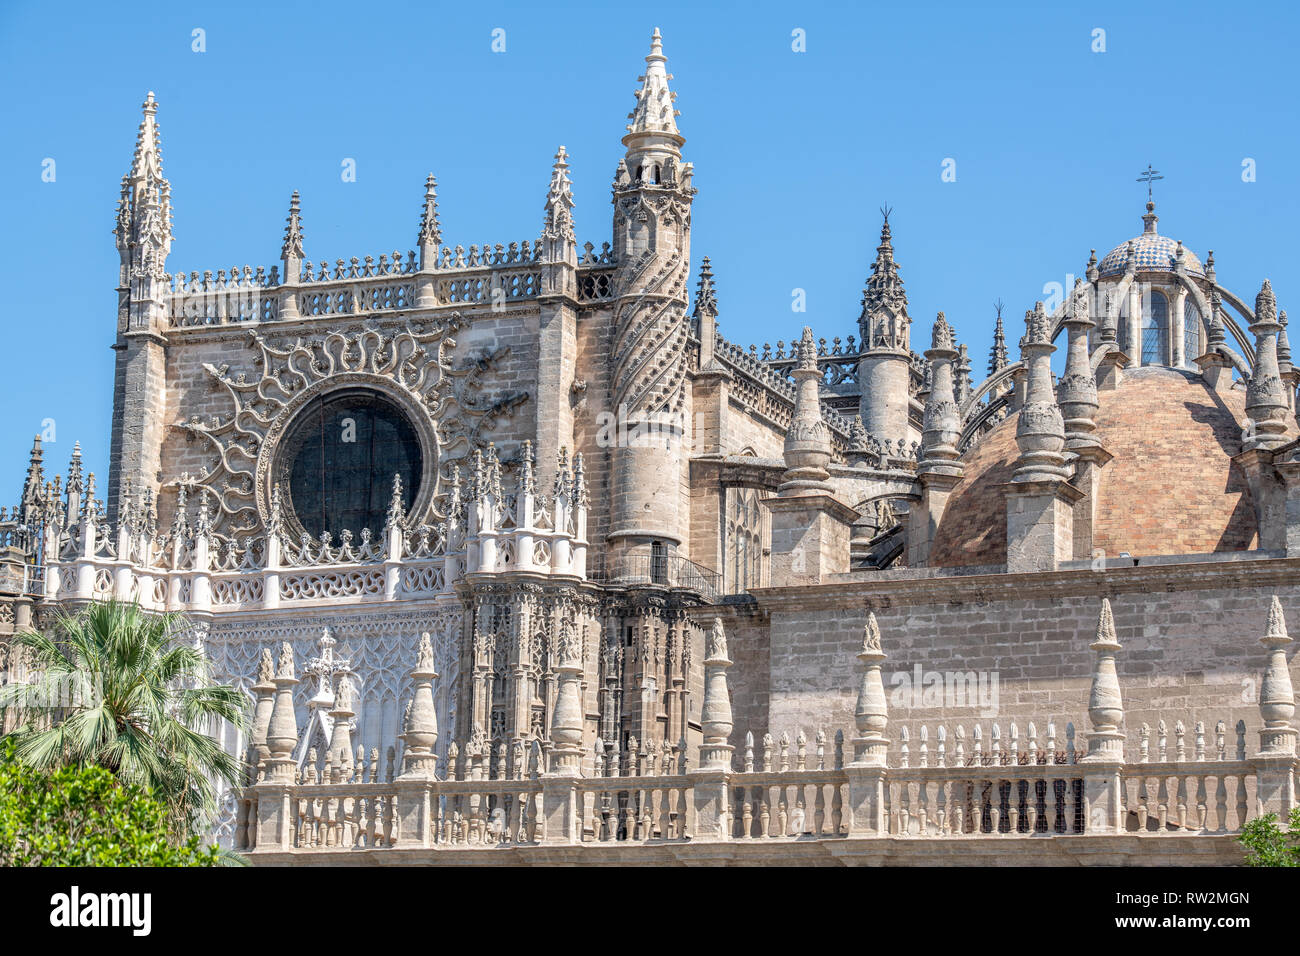 Une image de la troisième plus grande église du monde la cathédrale Sainte Marie de l'Voir à Séville , Espagne. Banque D'Images